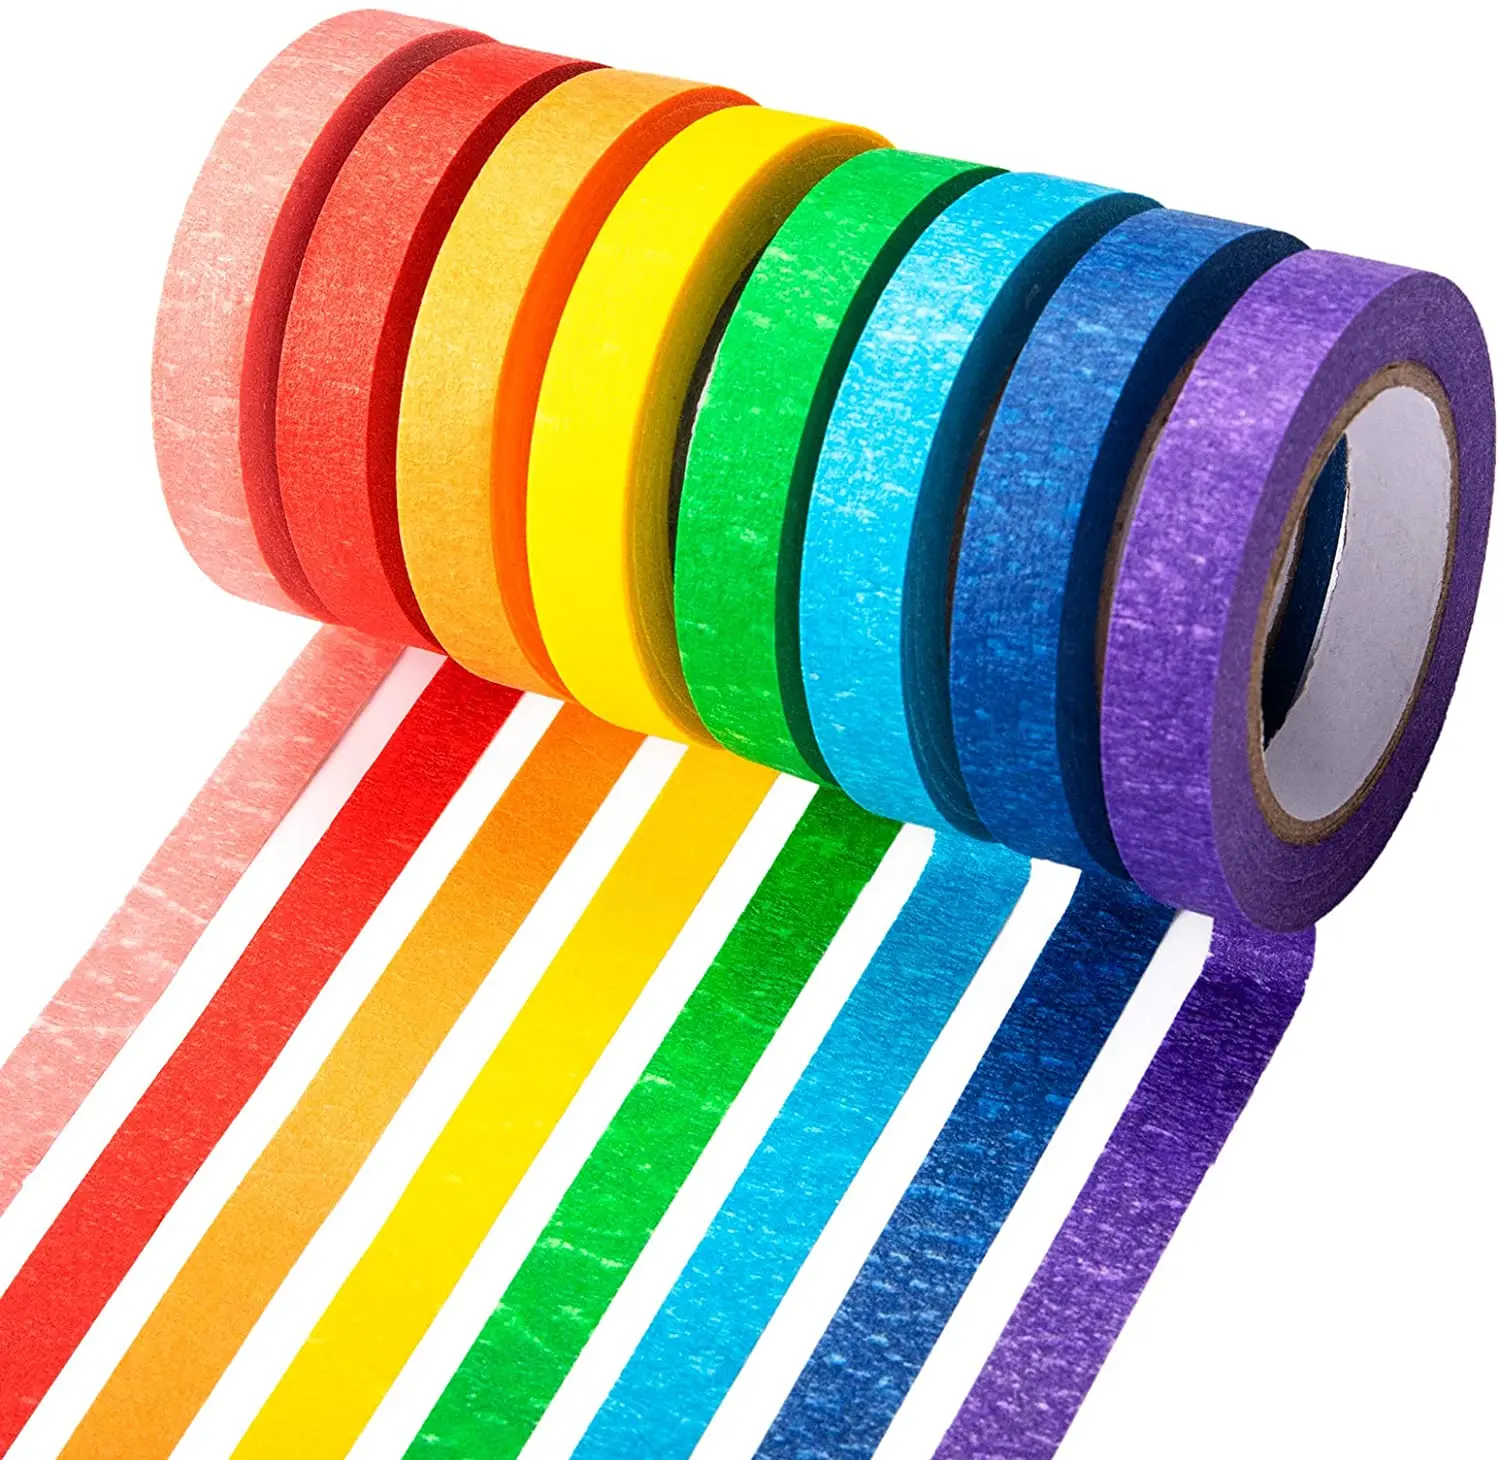 pintura qiaoyosh cinta adhesiva color 8 rollos recambio etiquetado o codificación cinta de conducto de colores 20mm x 13m modelado colores conjunto de cintas para artes manualidades 